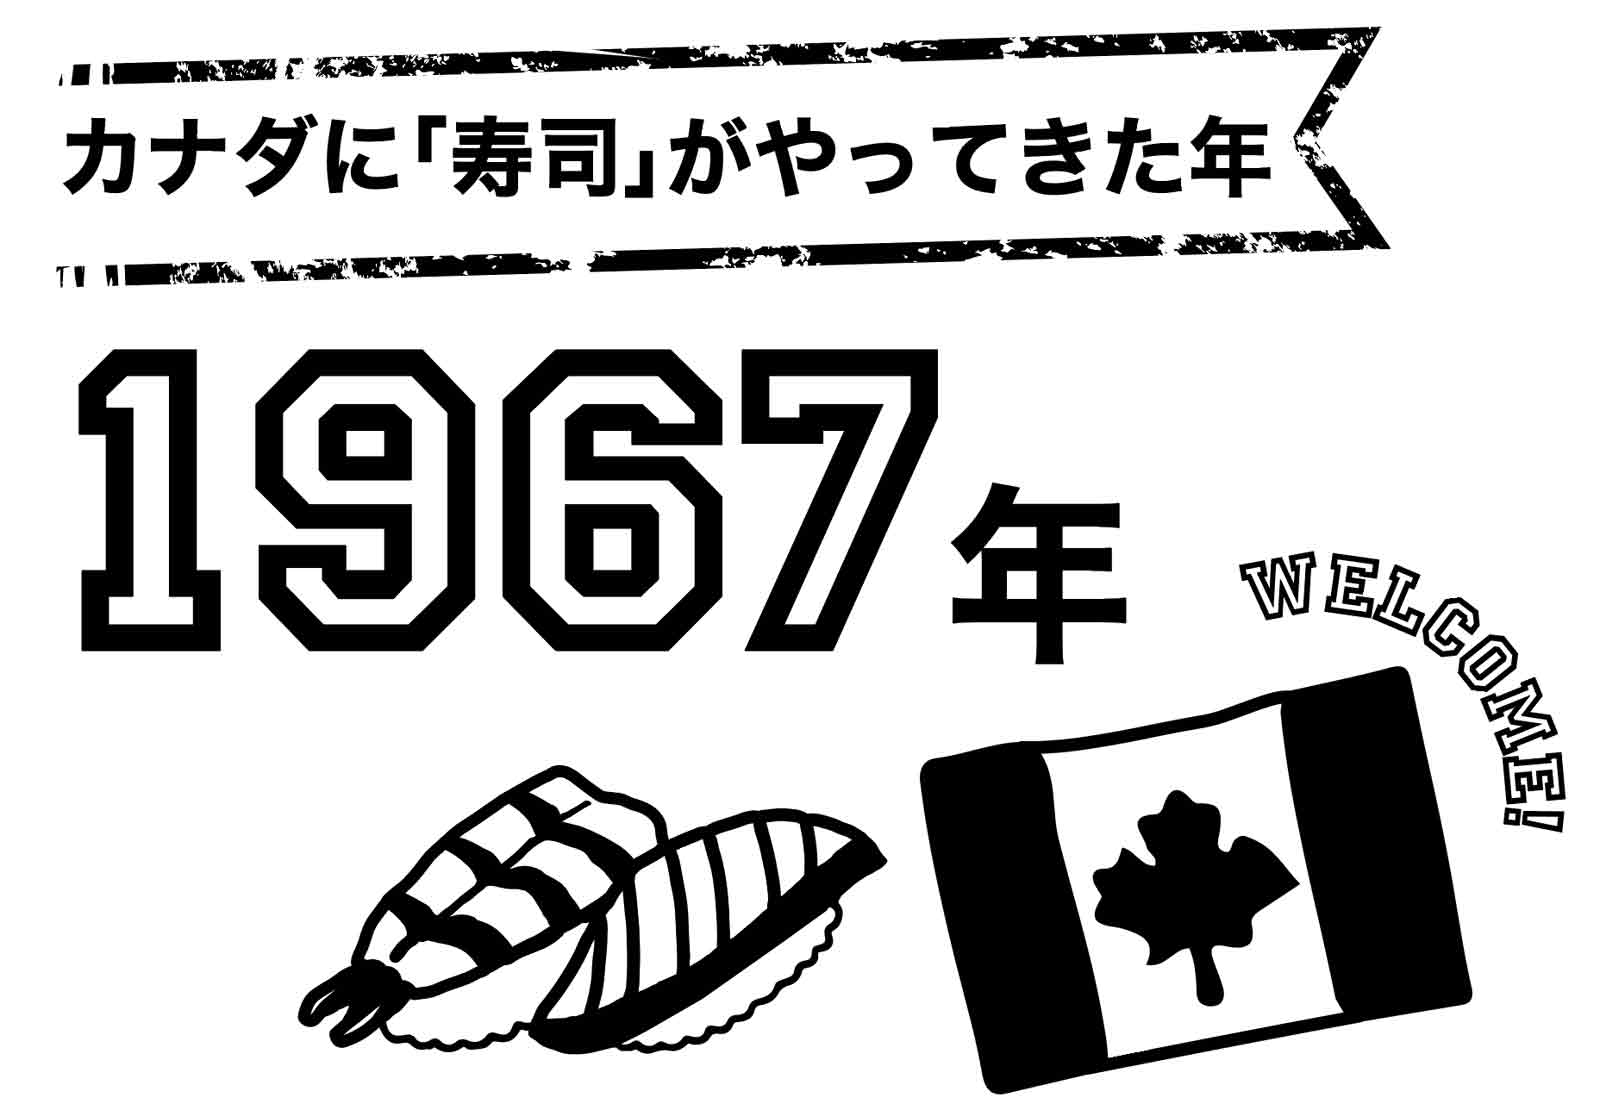 カナダに「寿司」がやってきた年　1967年